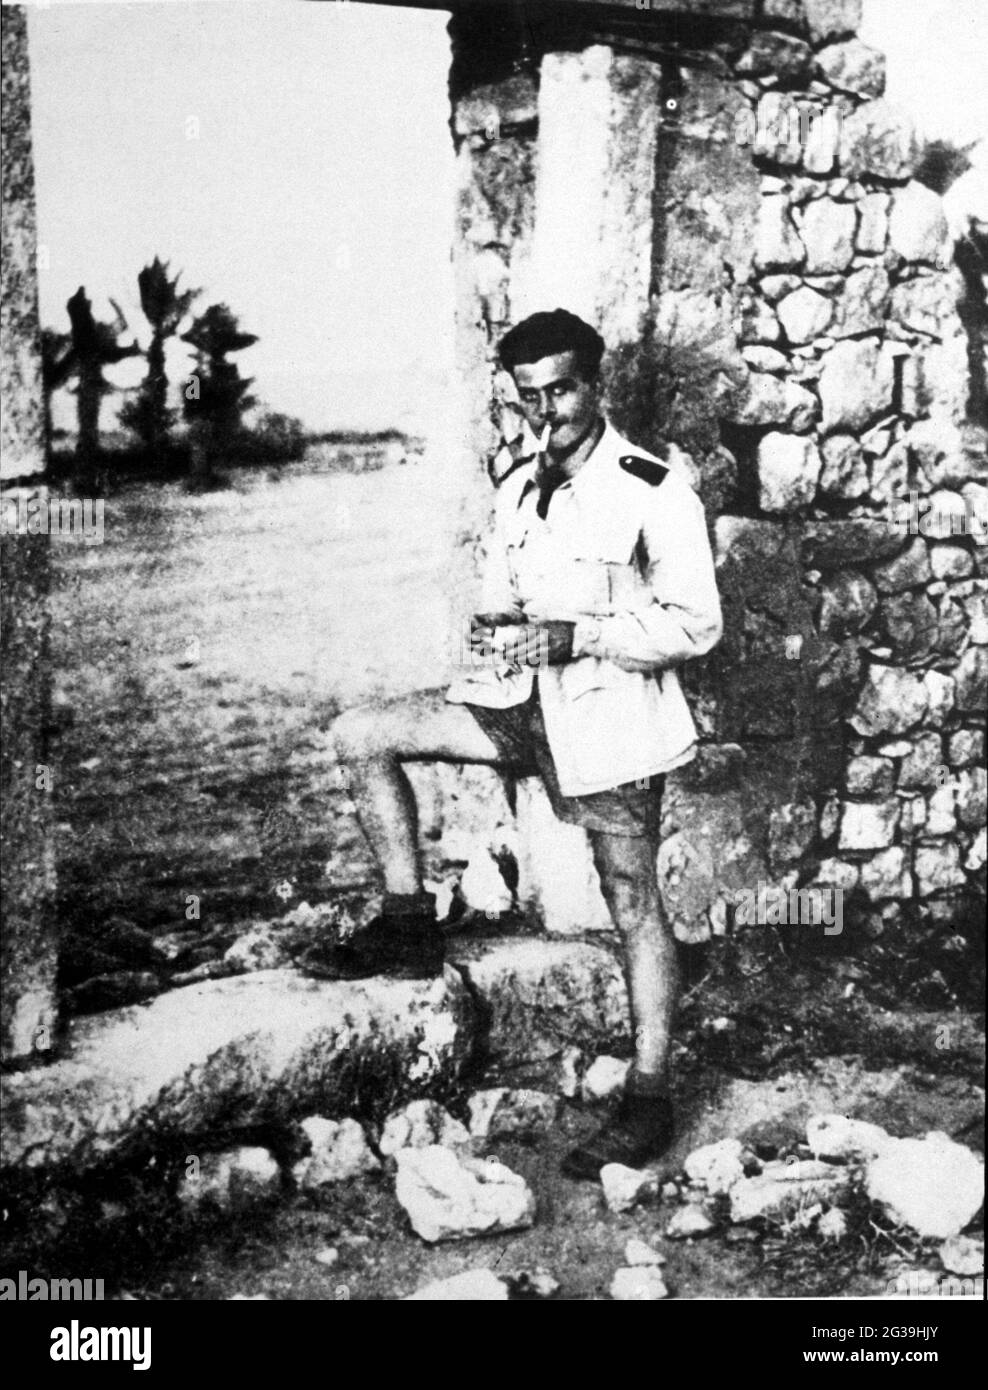 1940 , Tripoli , Lybia : The military vicebrigadiere Carabiniere SALVO D'ACQUISTO ( 1920 - 1943 ) during the military service. Killed for save 22 hostages from Nazi , Medaglia d' Oro al Valor Militare - EROE - HERO - WORLD WAR II - WW 2nd - SECONDA GUERRA MONDIALE - nazismo - nazism - RESISTENZA - processo di beatificazione  - portrait - ritratto  - DACQUISTO - D' ACQUISTO ----  Archivio GBB Stock Photo